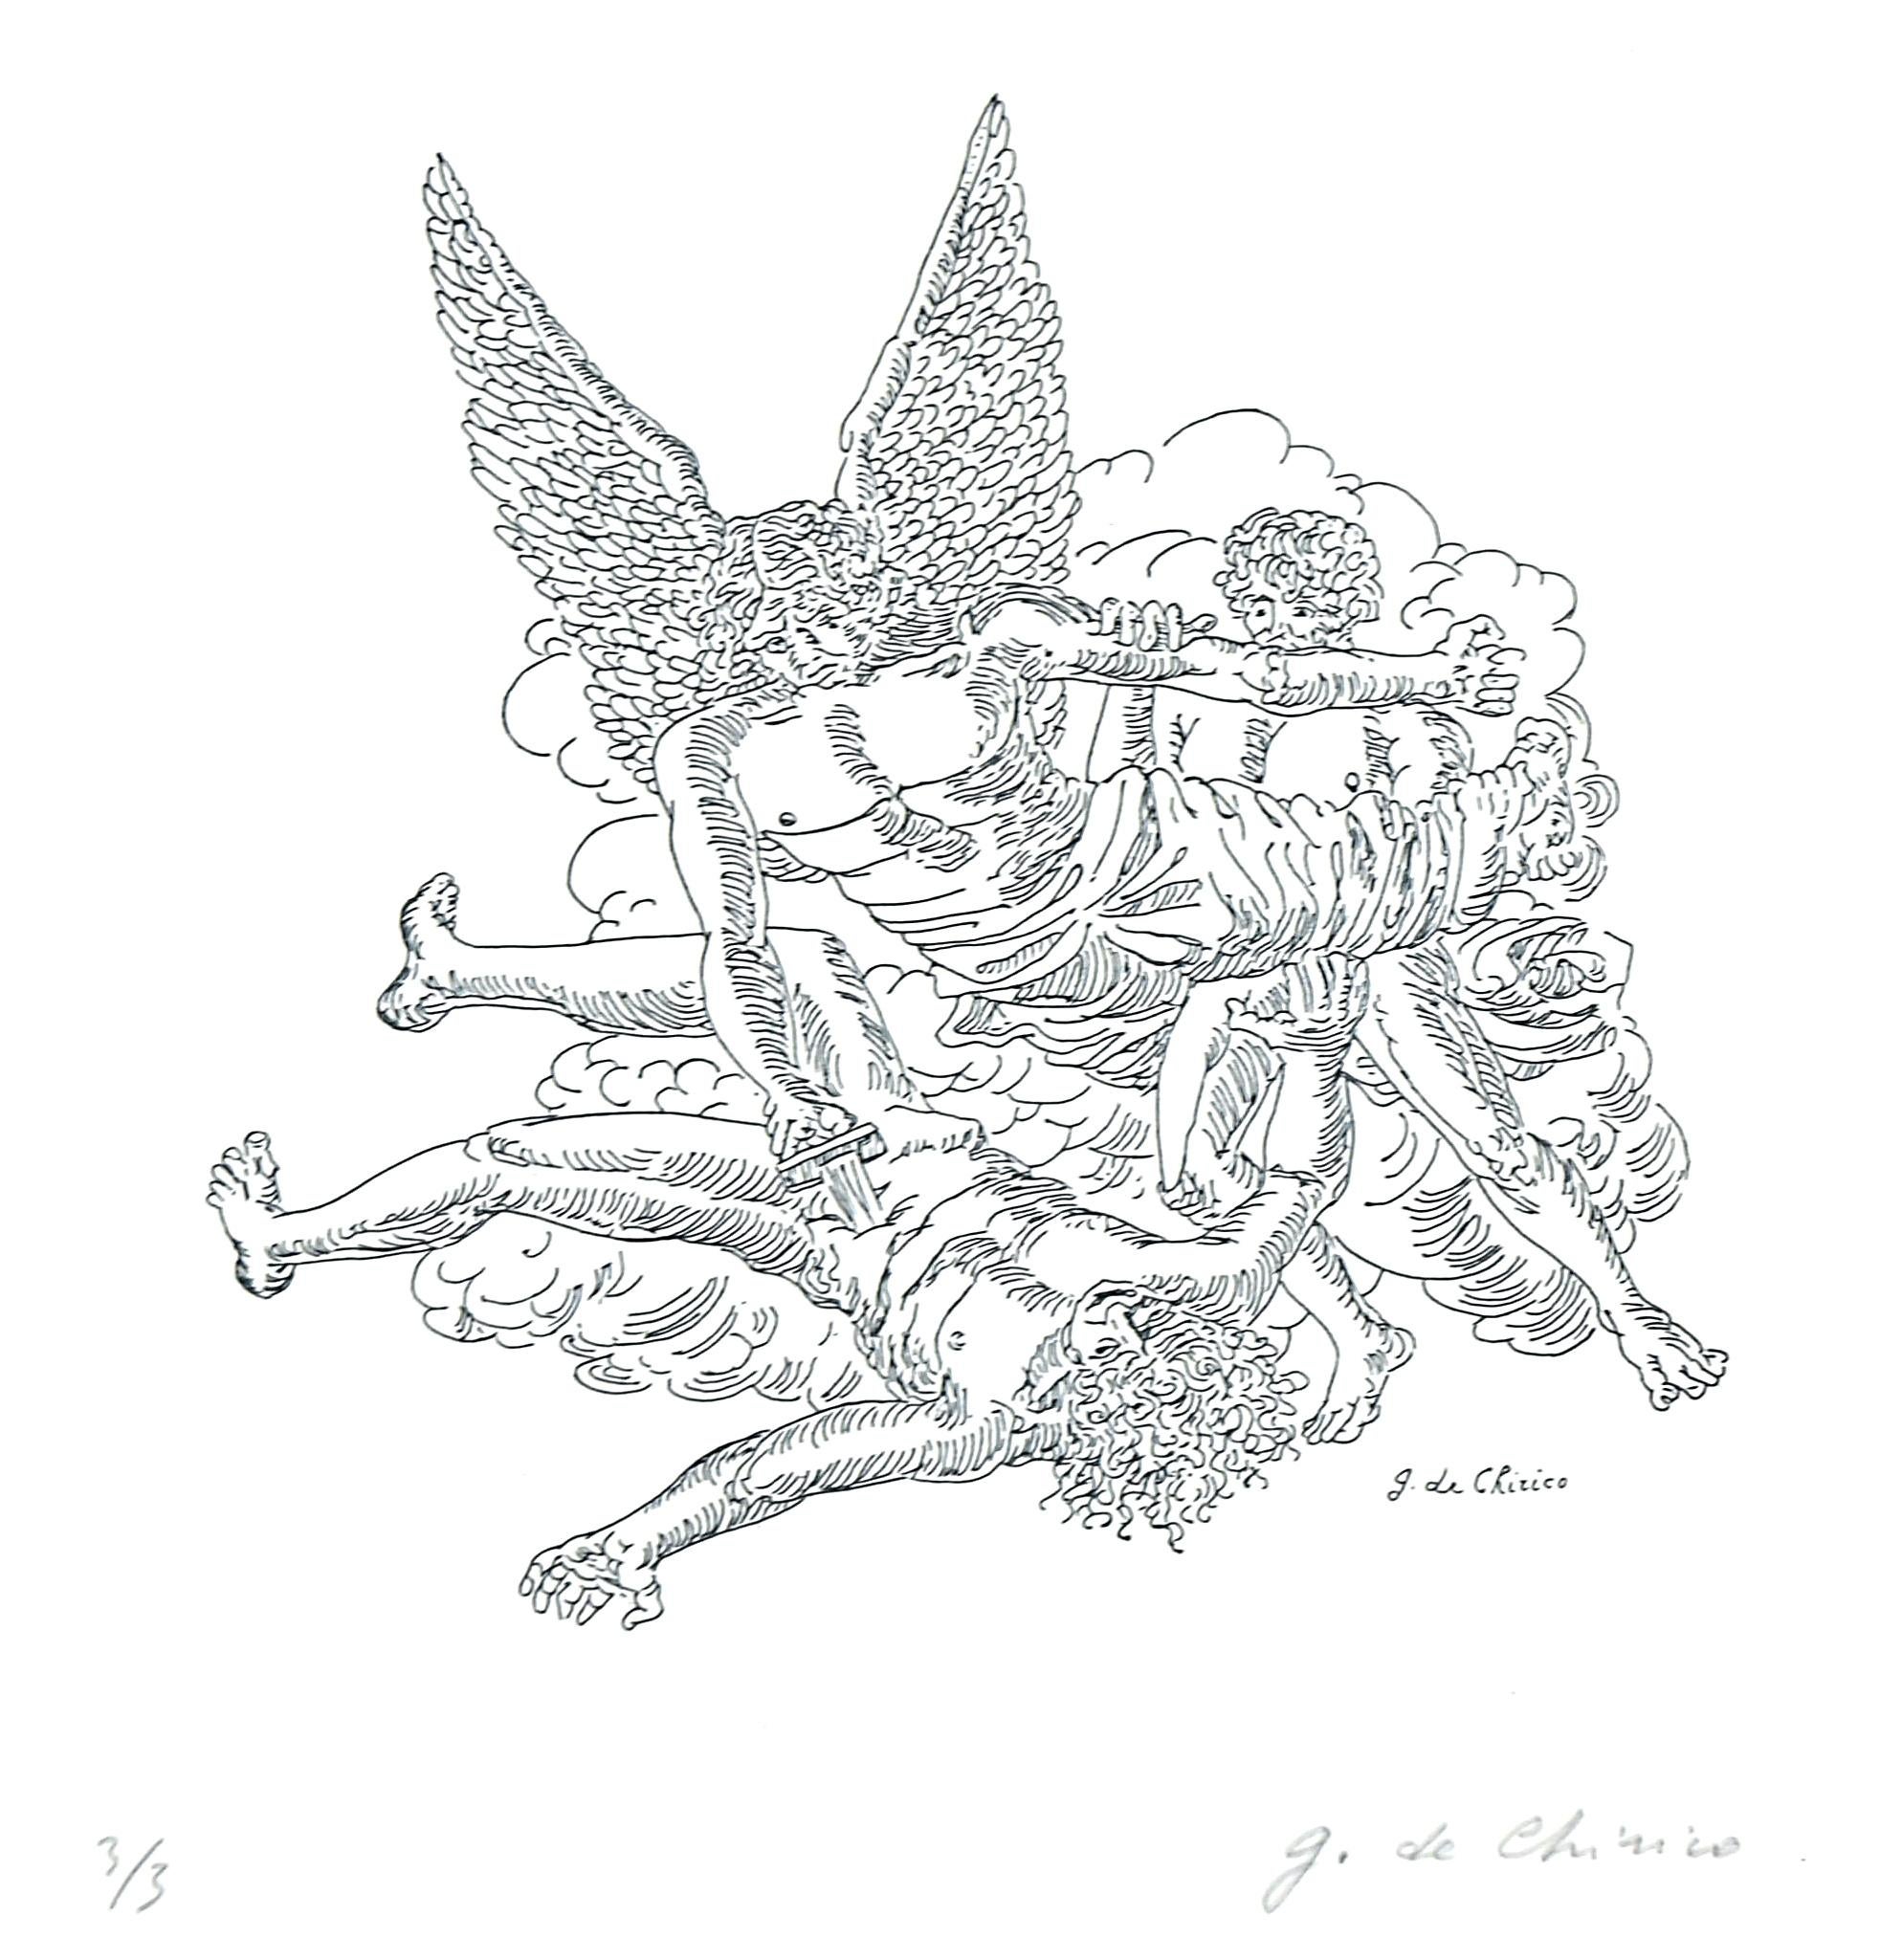 L'Apocalypse de Jean l'Évangéliste est une gravure originale en noir et blanc réalisée par Giorgio De Chirico dans la moitié du XXe siècle.

Signé à la main dans la marge inférieure droite.

Numéroté en bas à gauche. Ed. 3/3

L'œuvre est tirée du